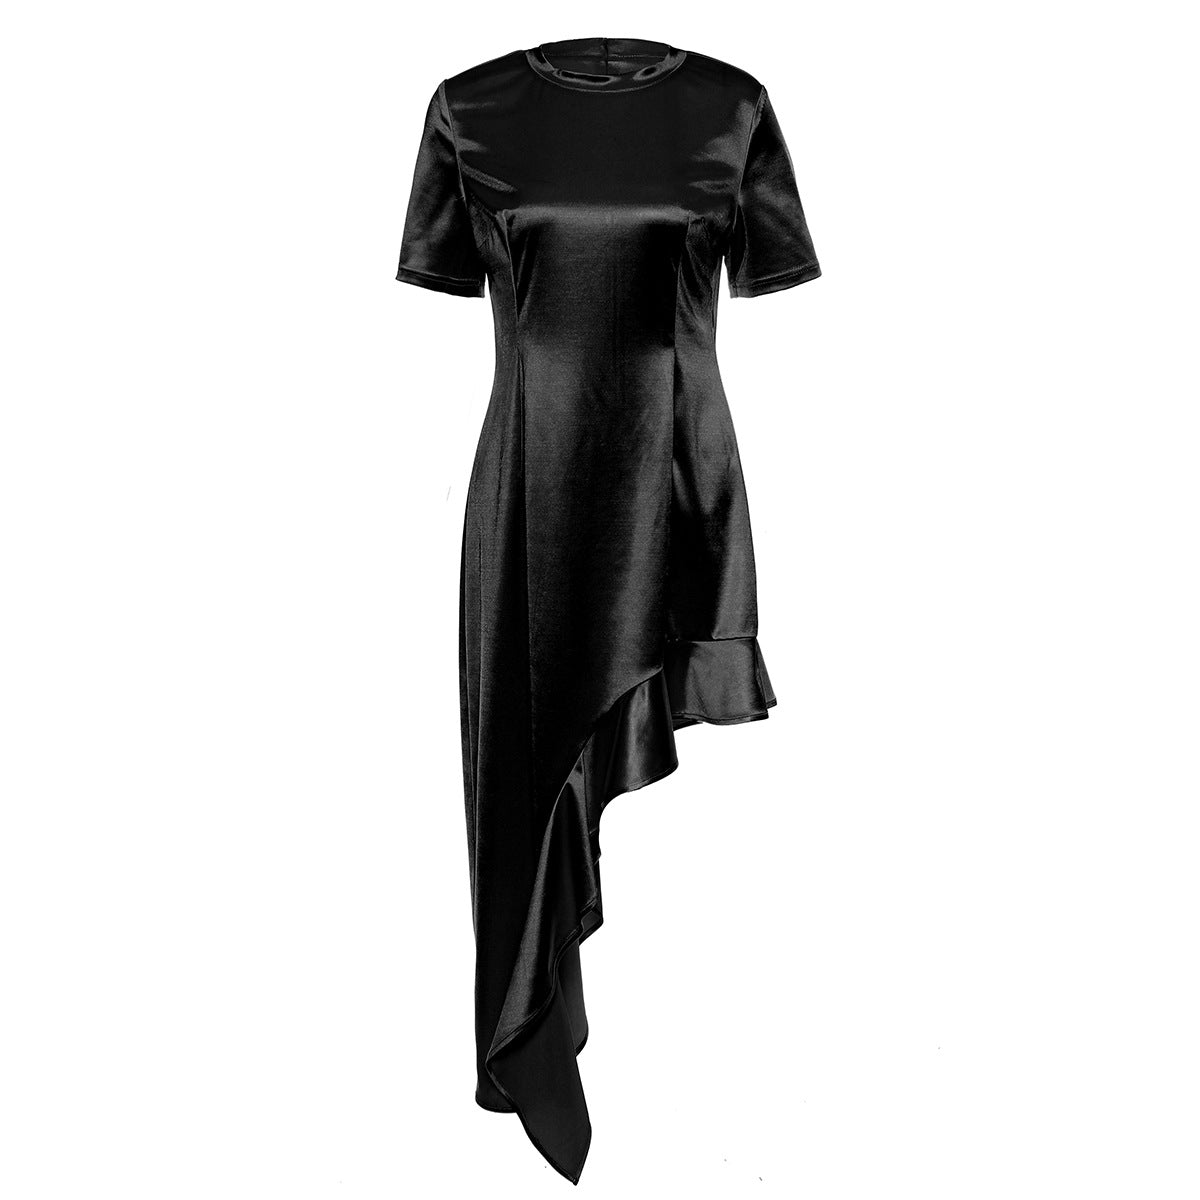 Unregelmäßiges asymmetrisches Kleid mit Rundhalsausschnitt, kurzen Ärmeln und Wellenrüschen